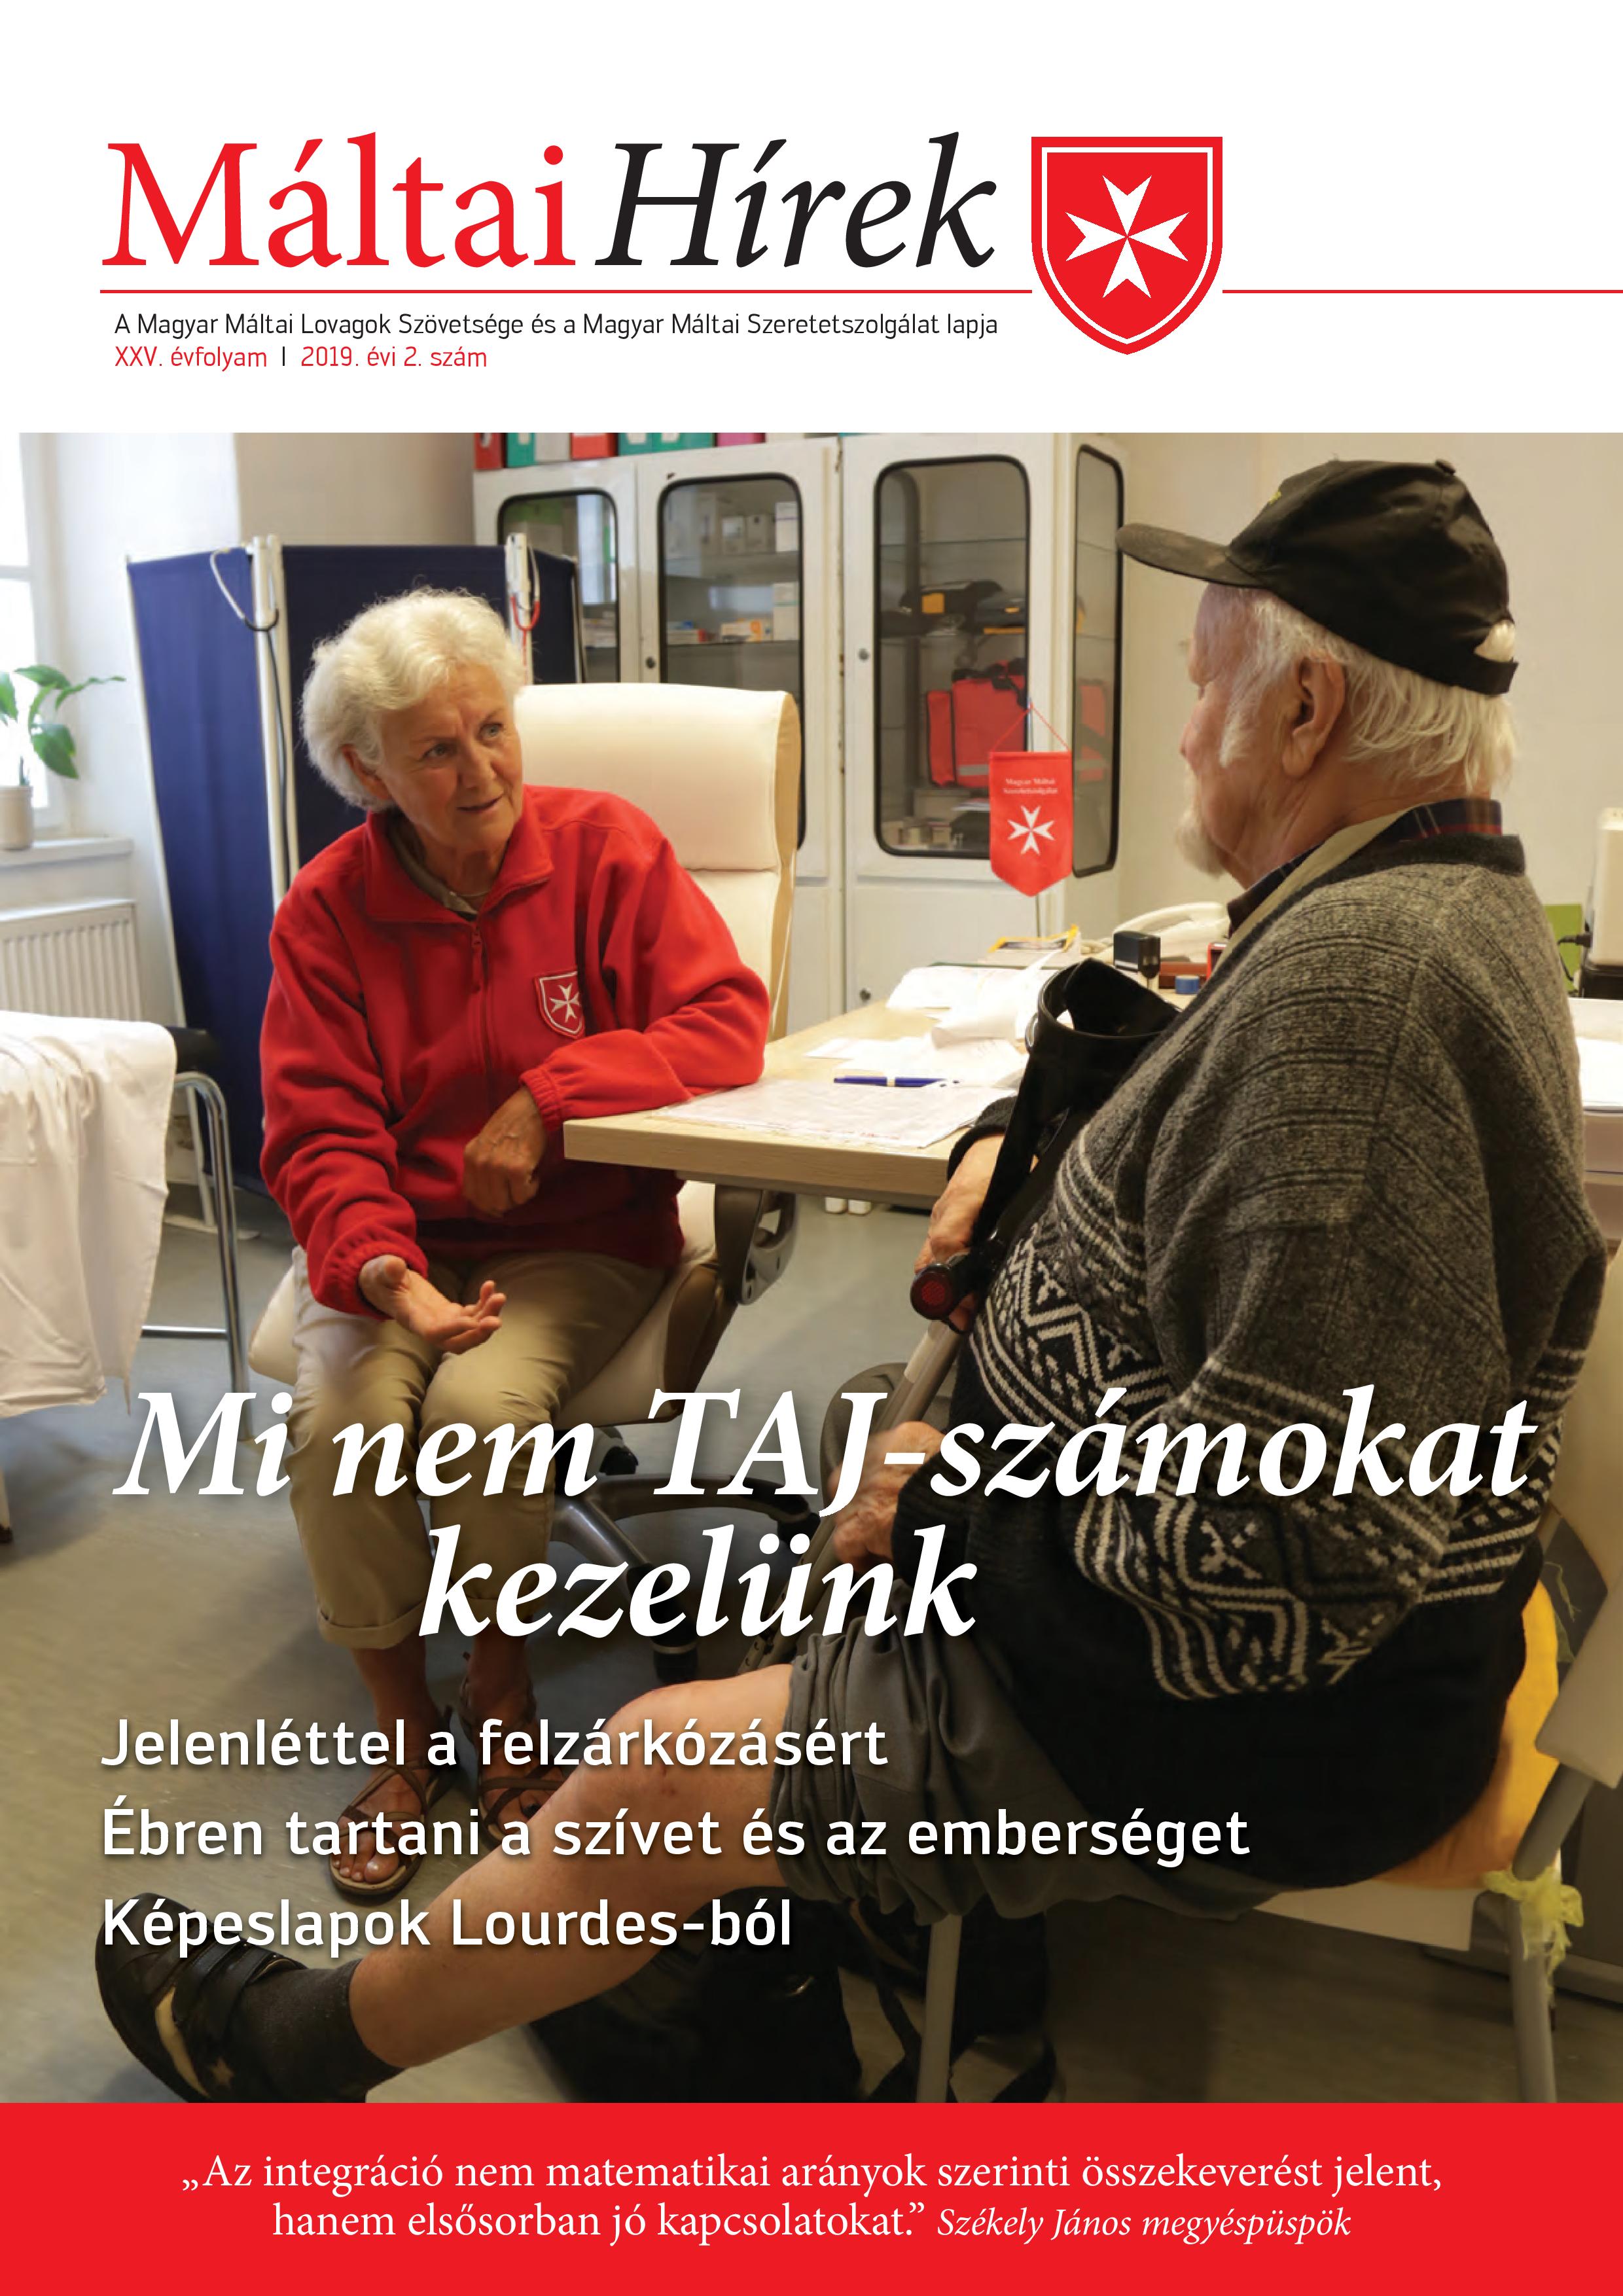 Címlapon: Ortopédiai vizsgálat a pécsi járóbeteg szakrendelésen